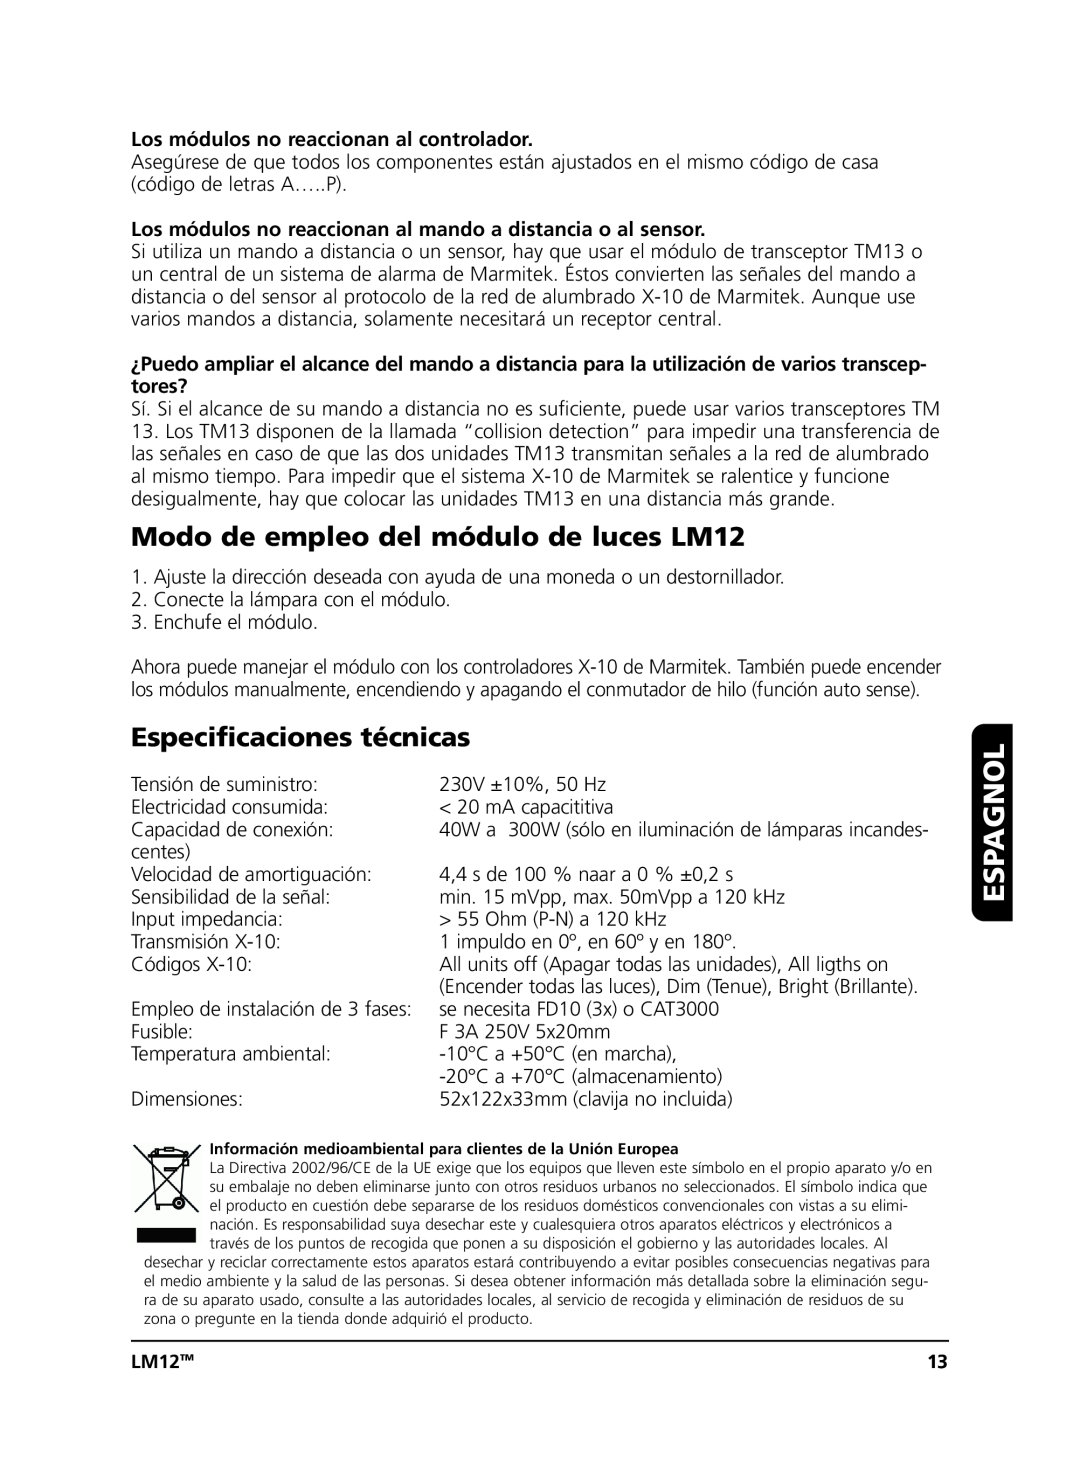 Marmitek user manual Modo de empleo del módulo de luces LM12, Especificaciones técnicas, Espagnol 